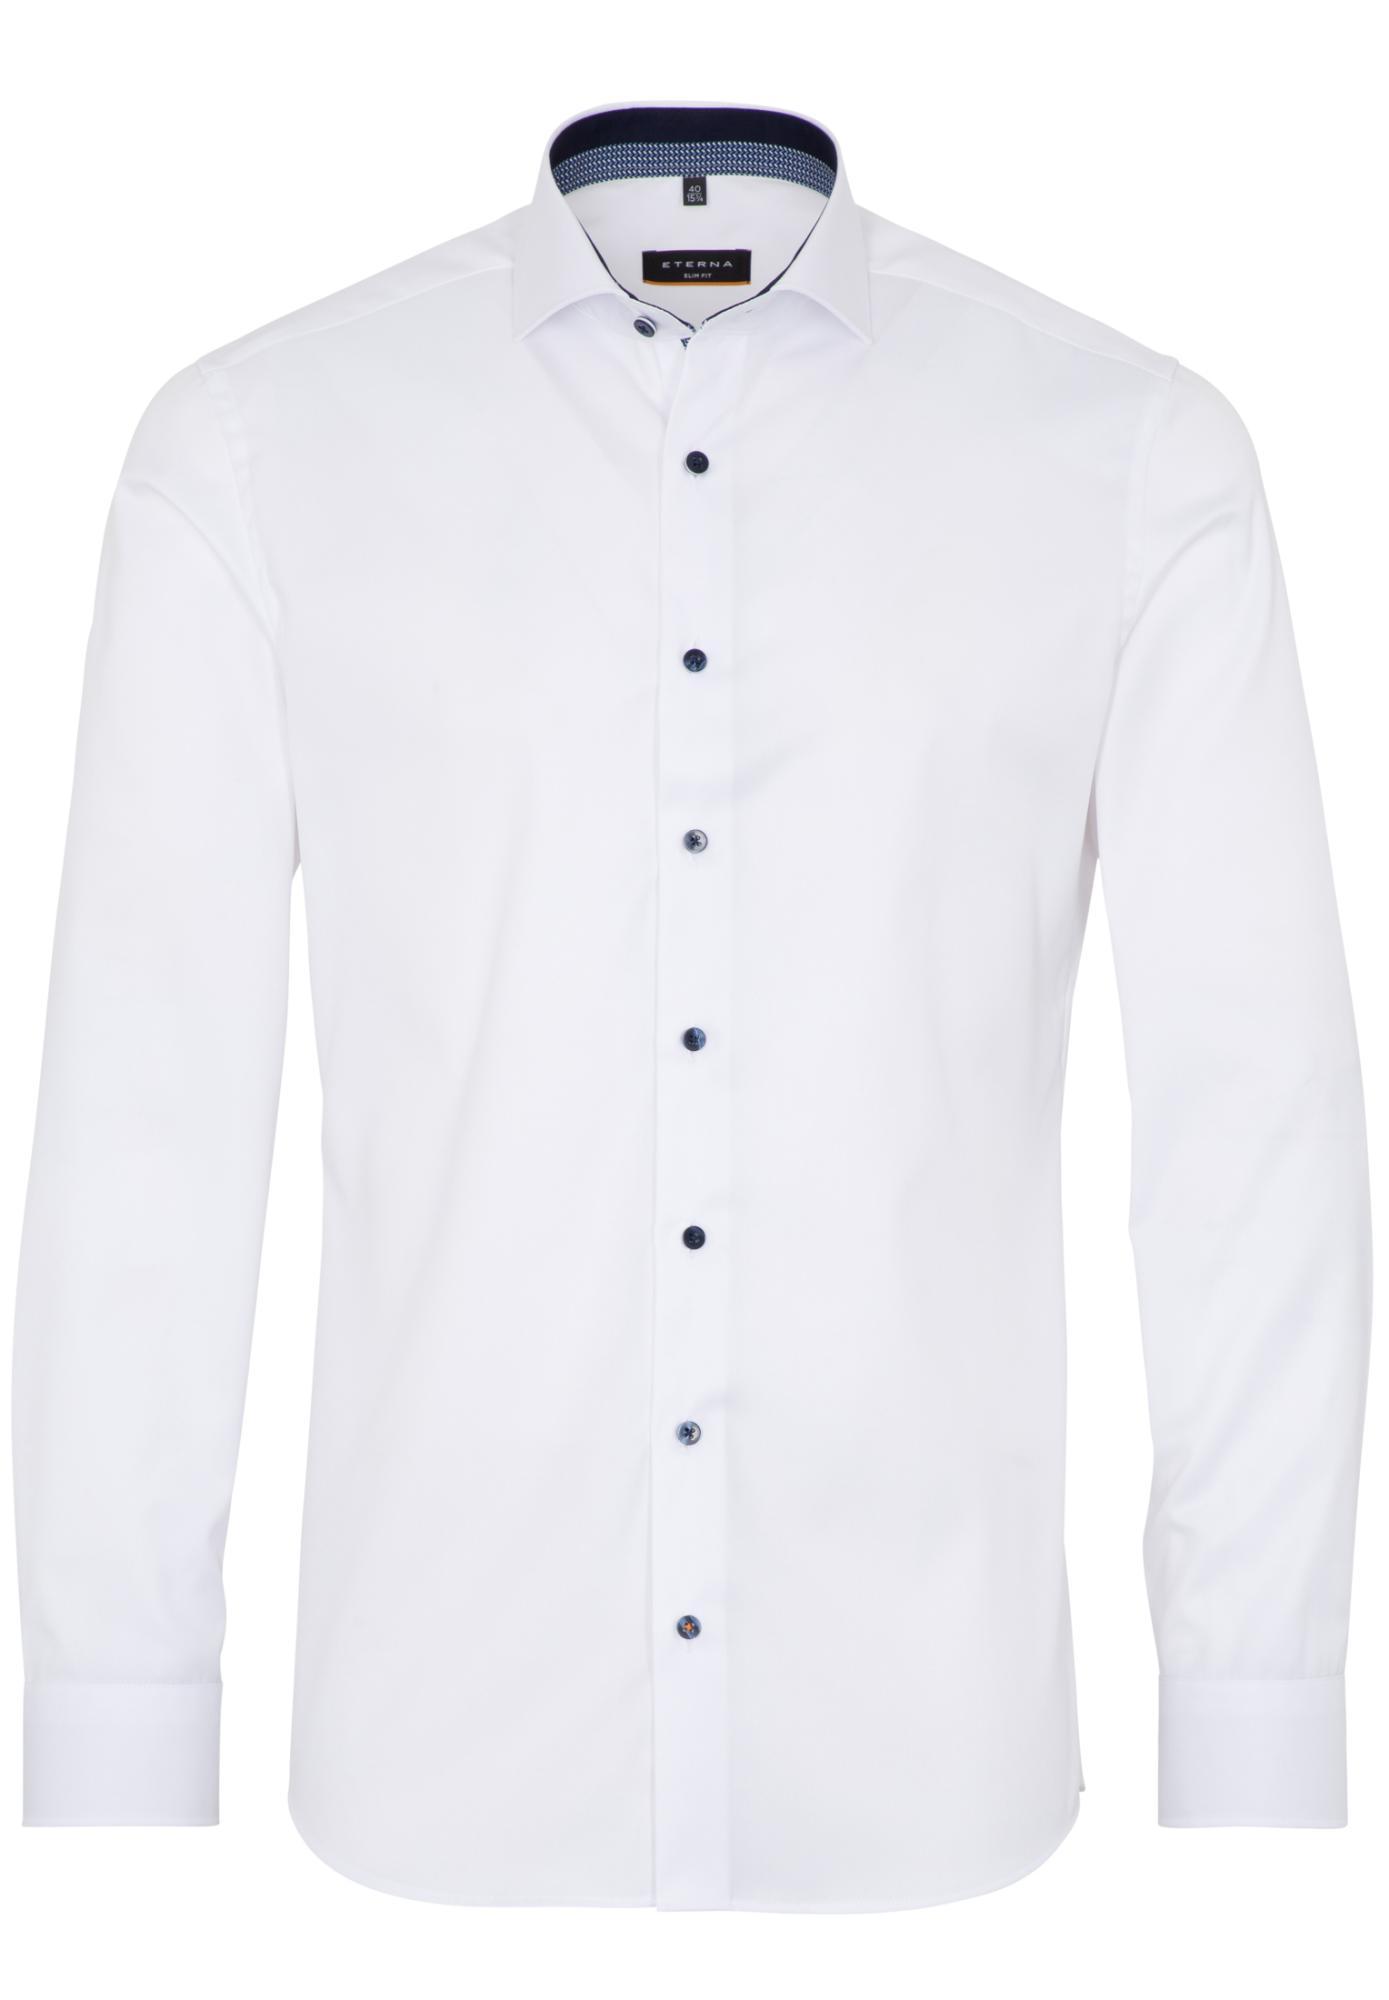 Мужская рубашка ETERNA, белая, цвет белый, размер 54